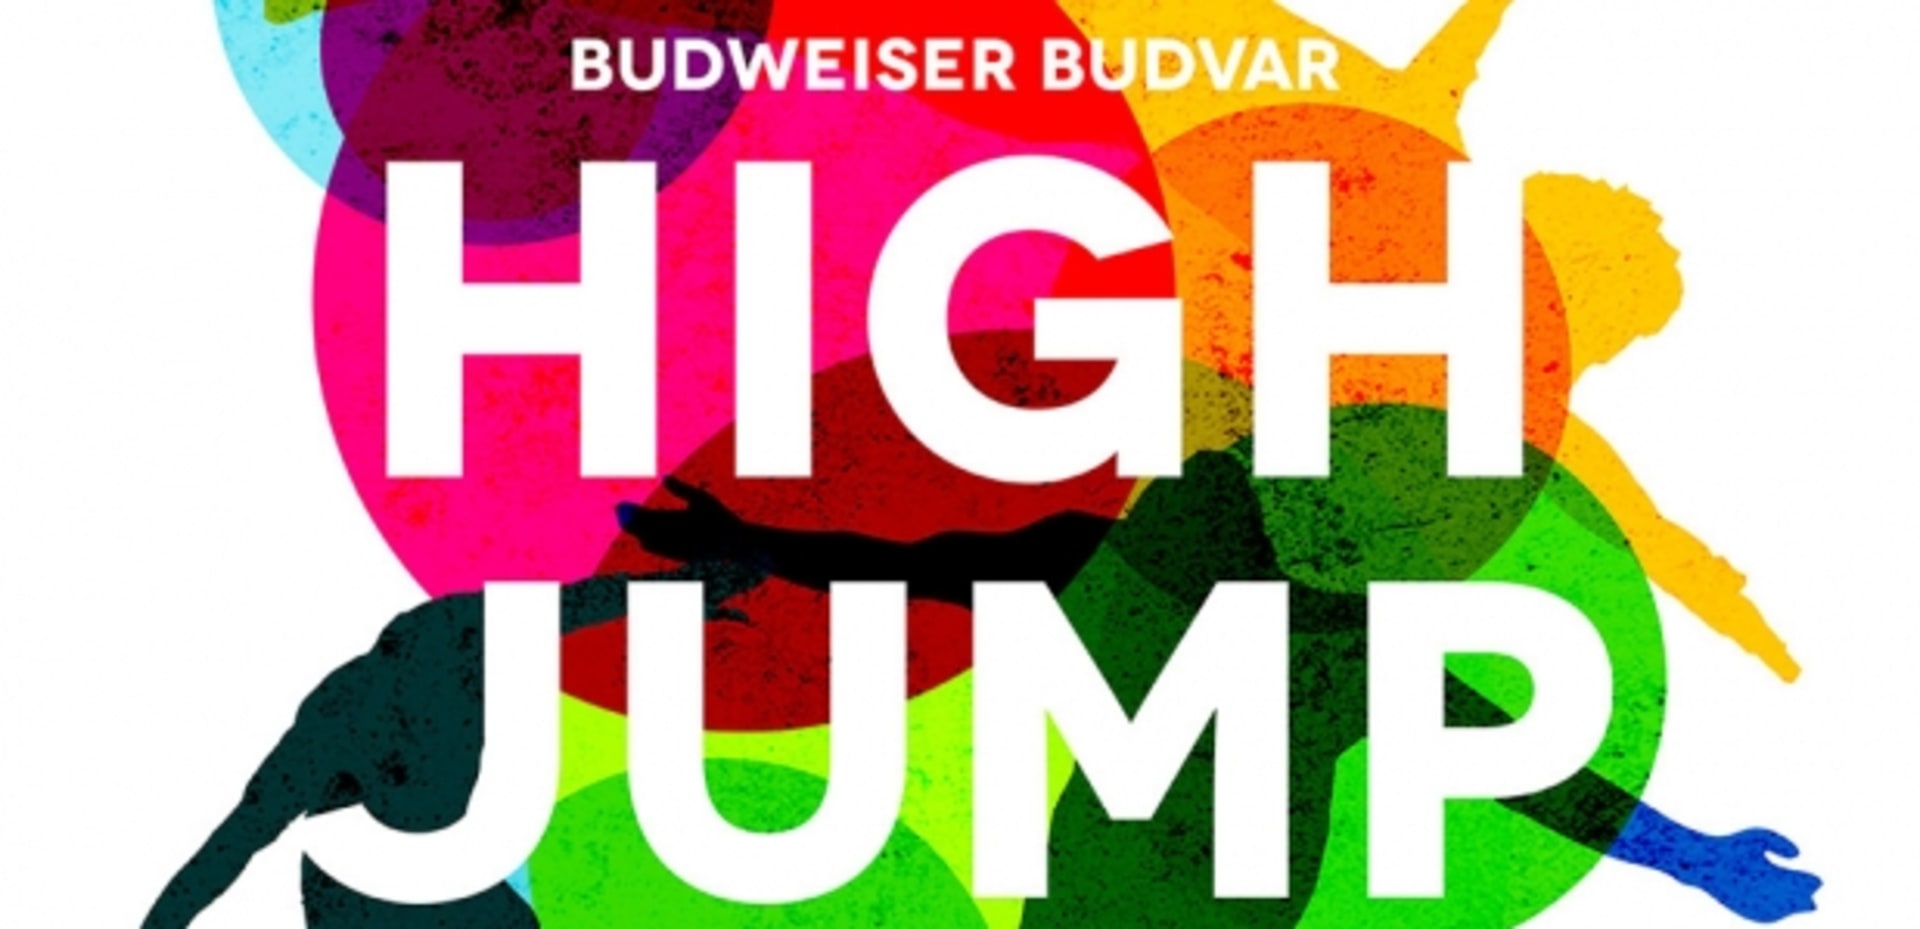 BUDWEISER BUDVAR HIGH JUMP 2013